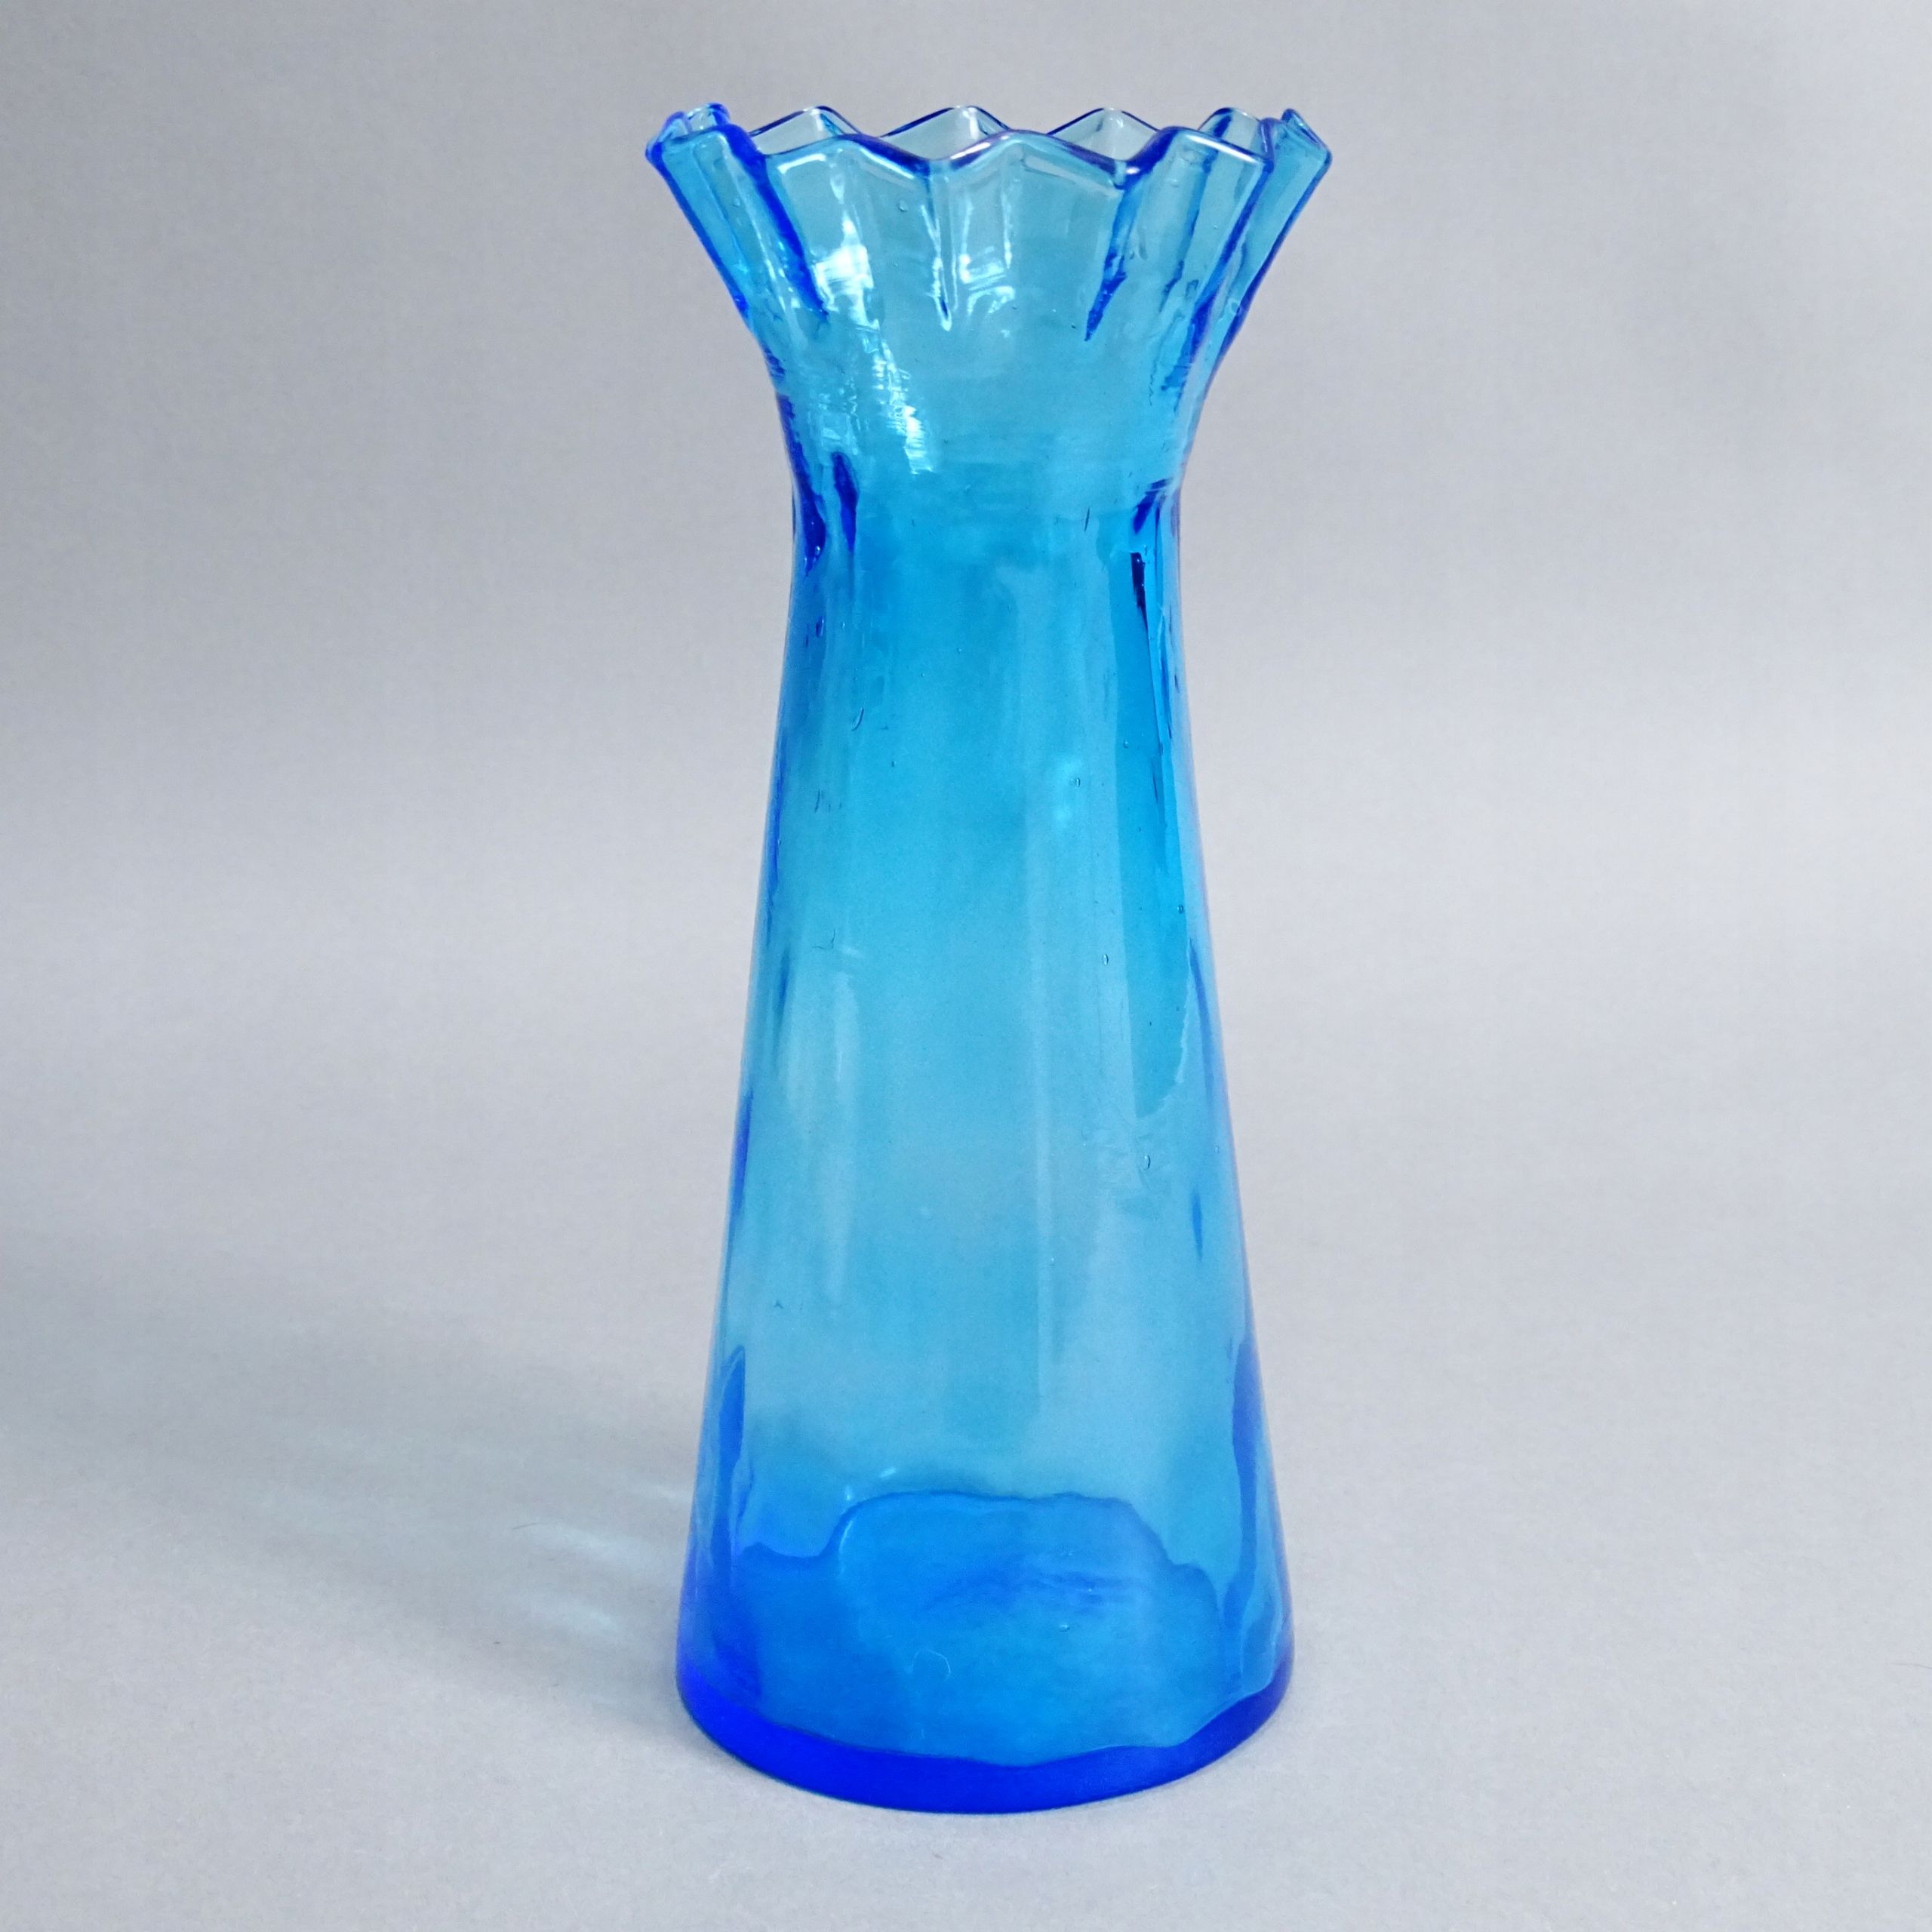 przełom xix/xx w. niebieski szklany wazon na hiacynty